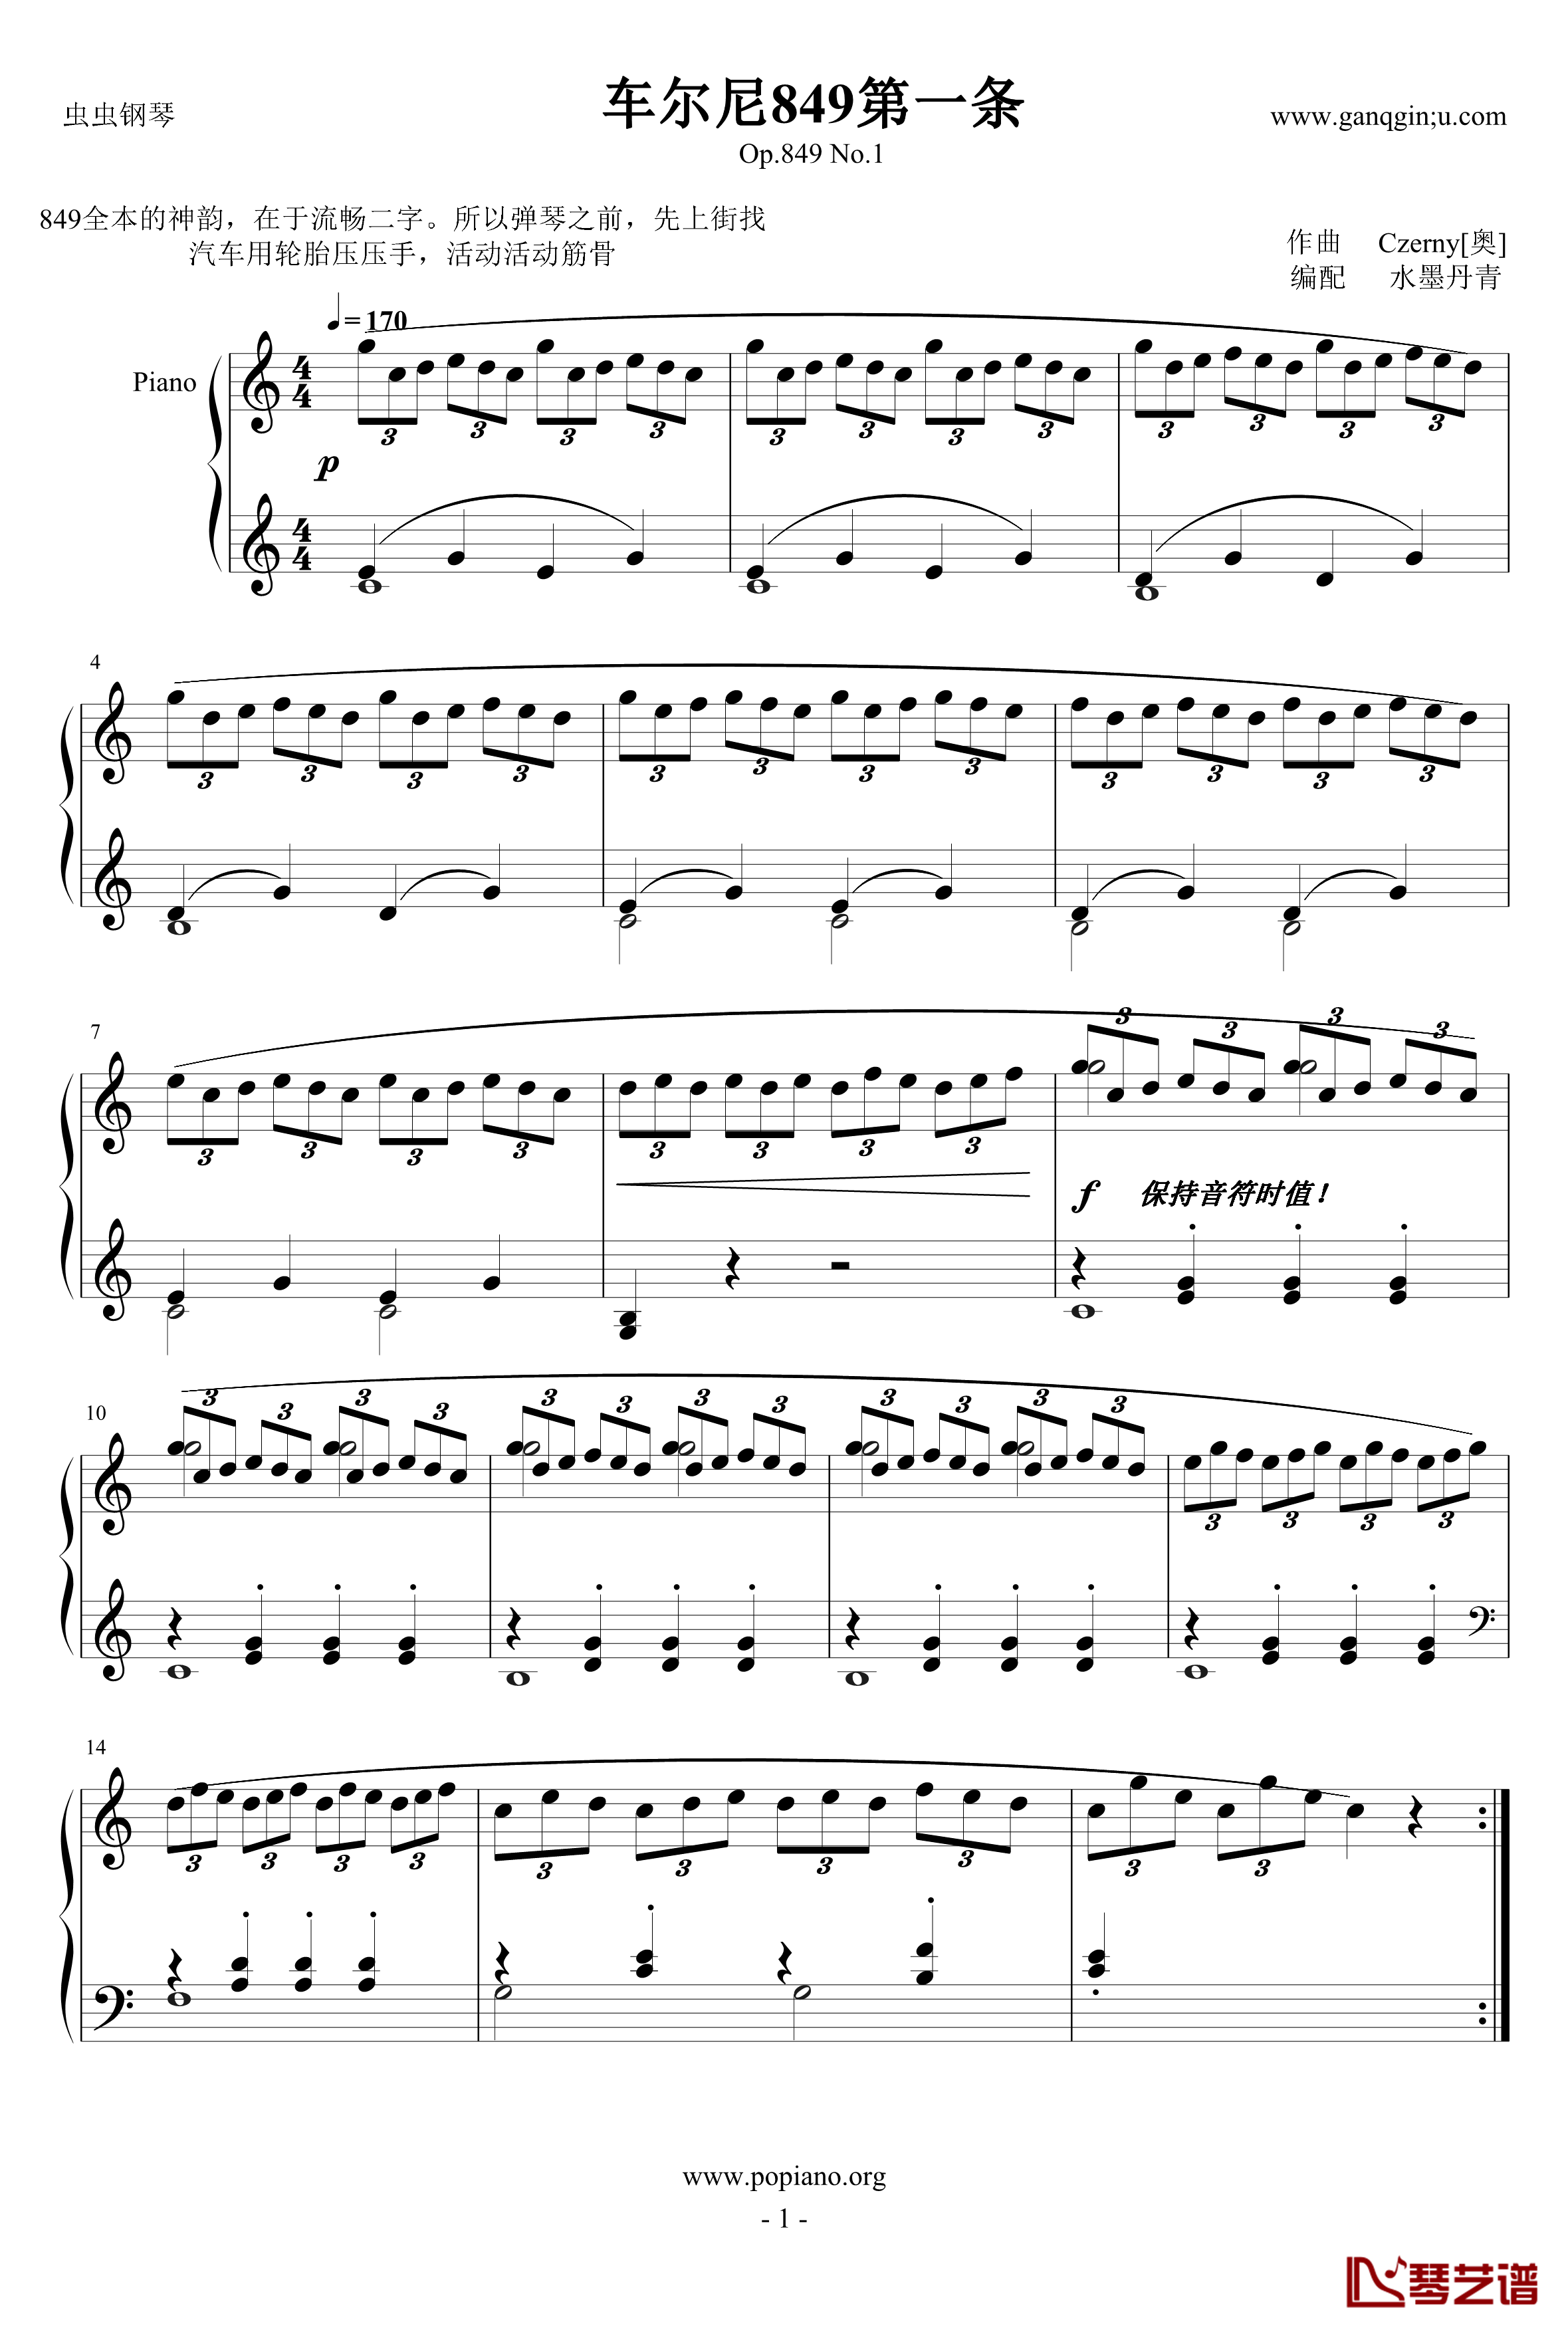 车尔尼849第一条钢琴谱-Op.849 No.1-Czerny1